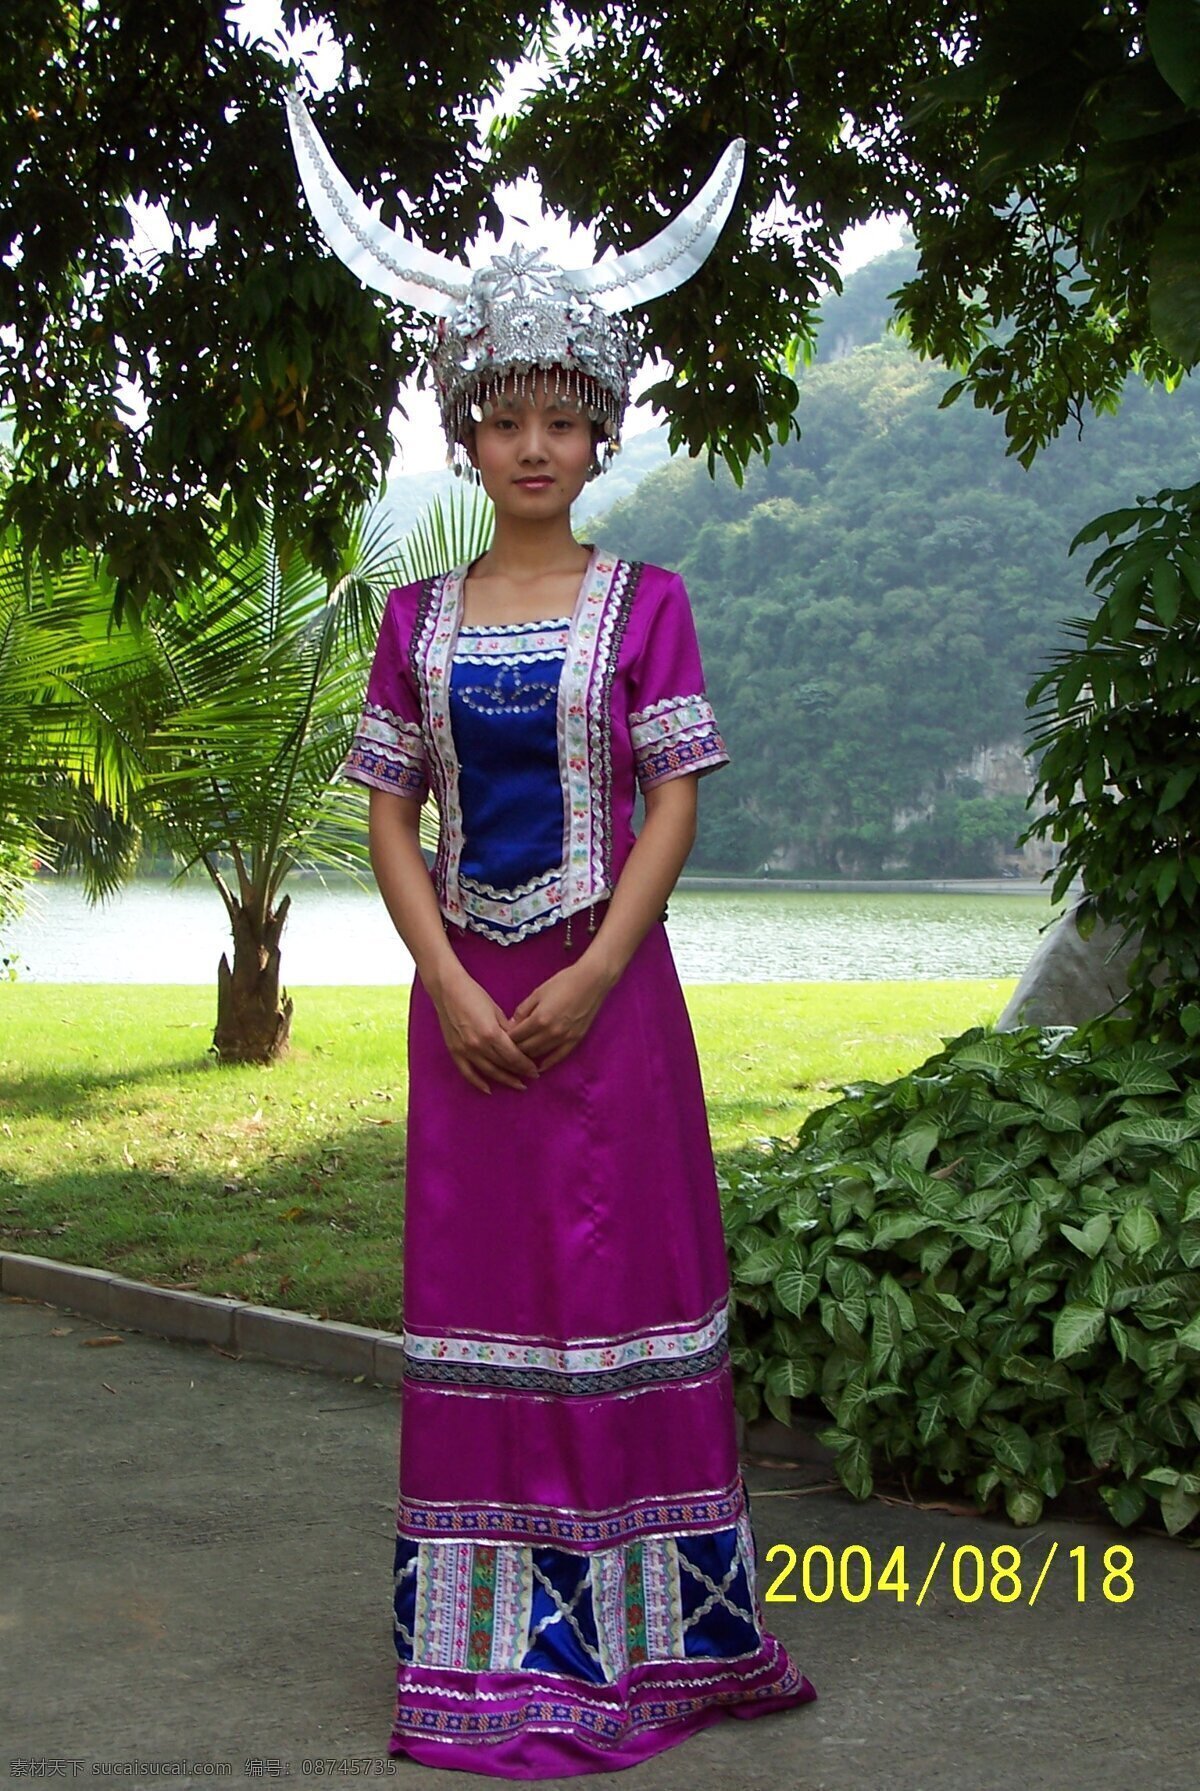 侗族盛装 文化艺术 传统文化 摄影图库